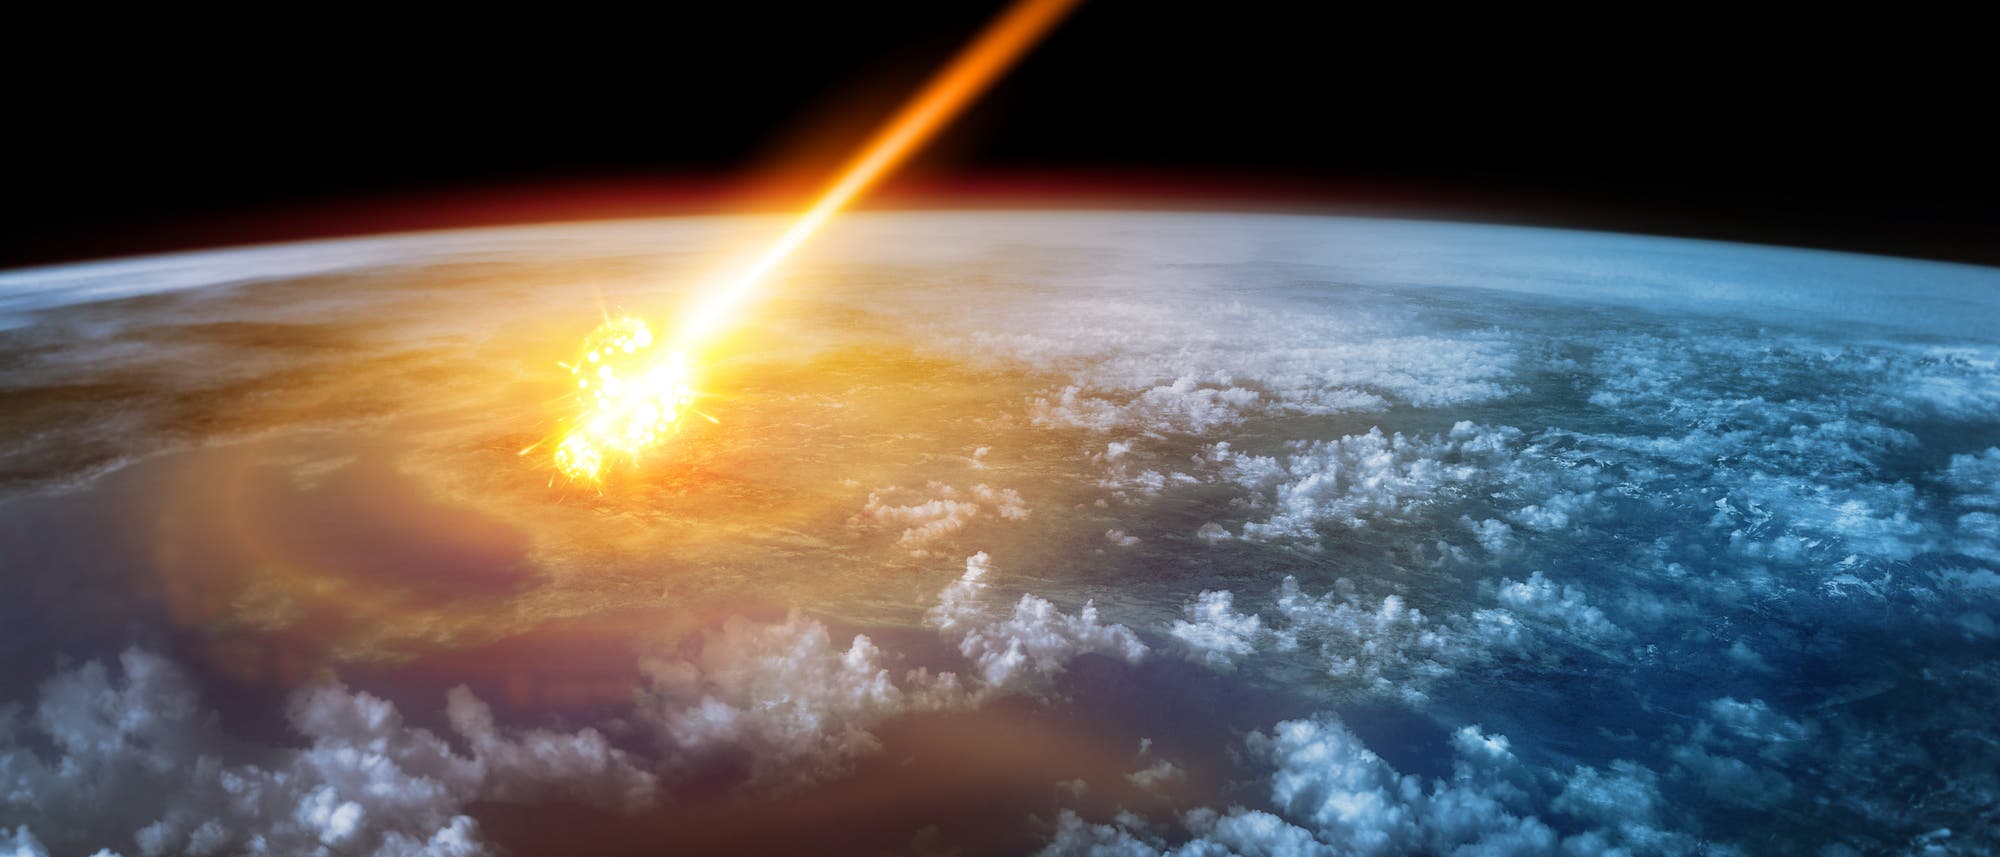 Illustration eines Asteroideneinschlags auf der Erde.